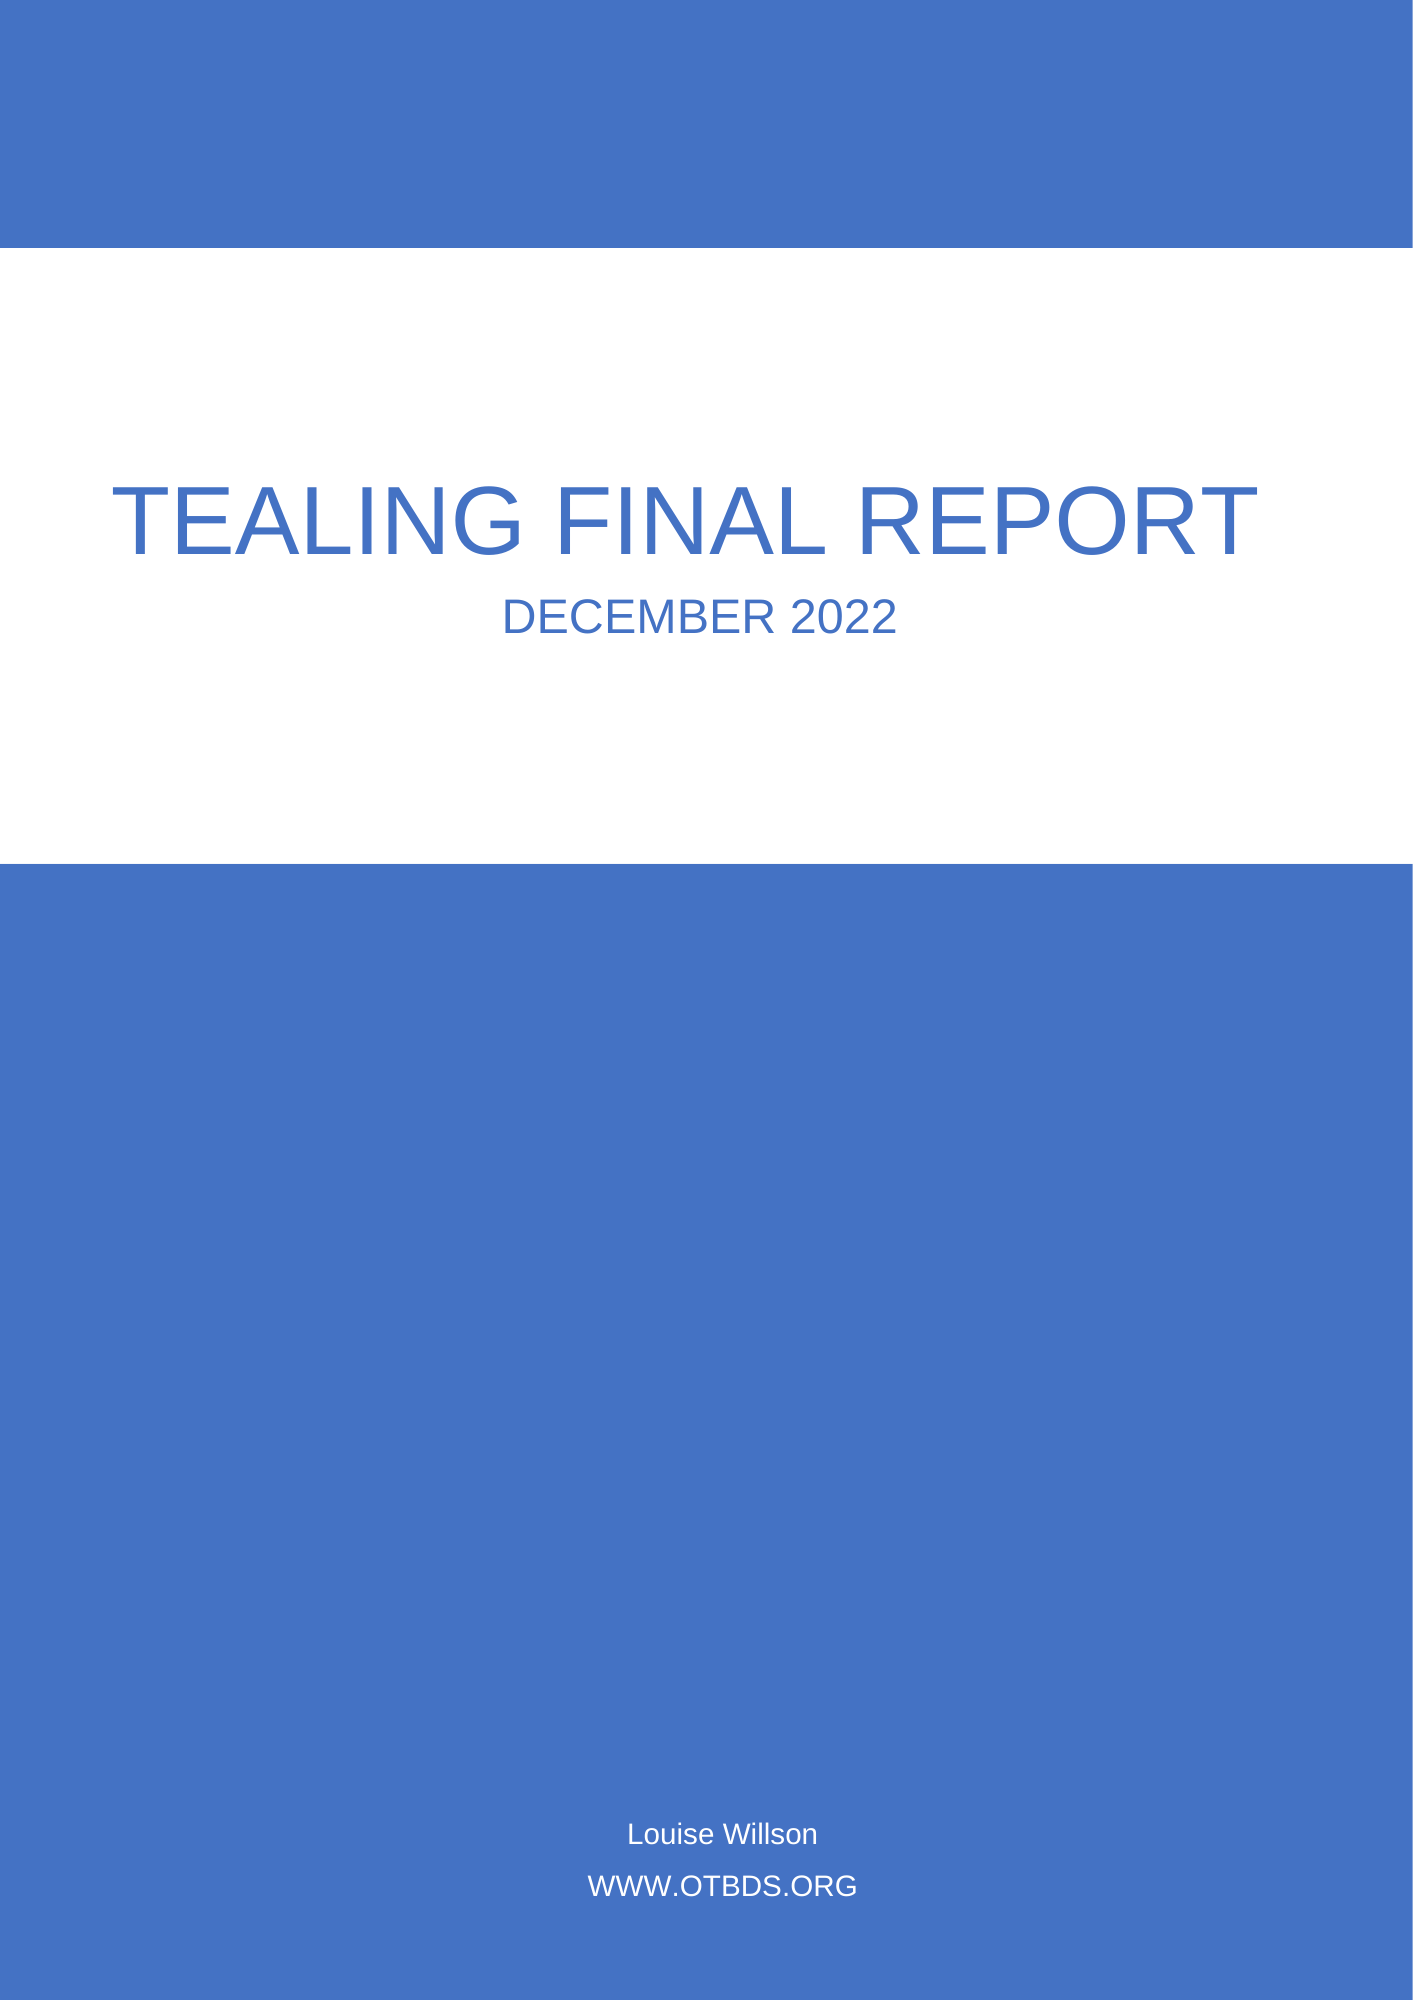 Tealing final report December 2022